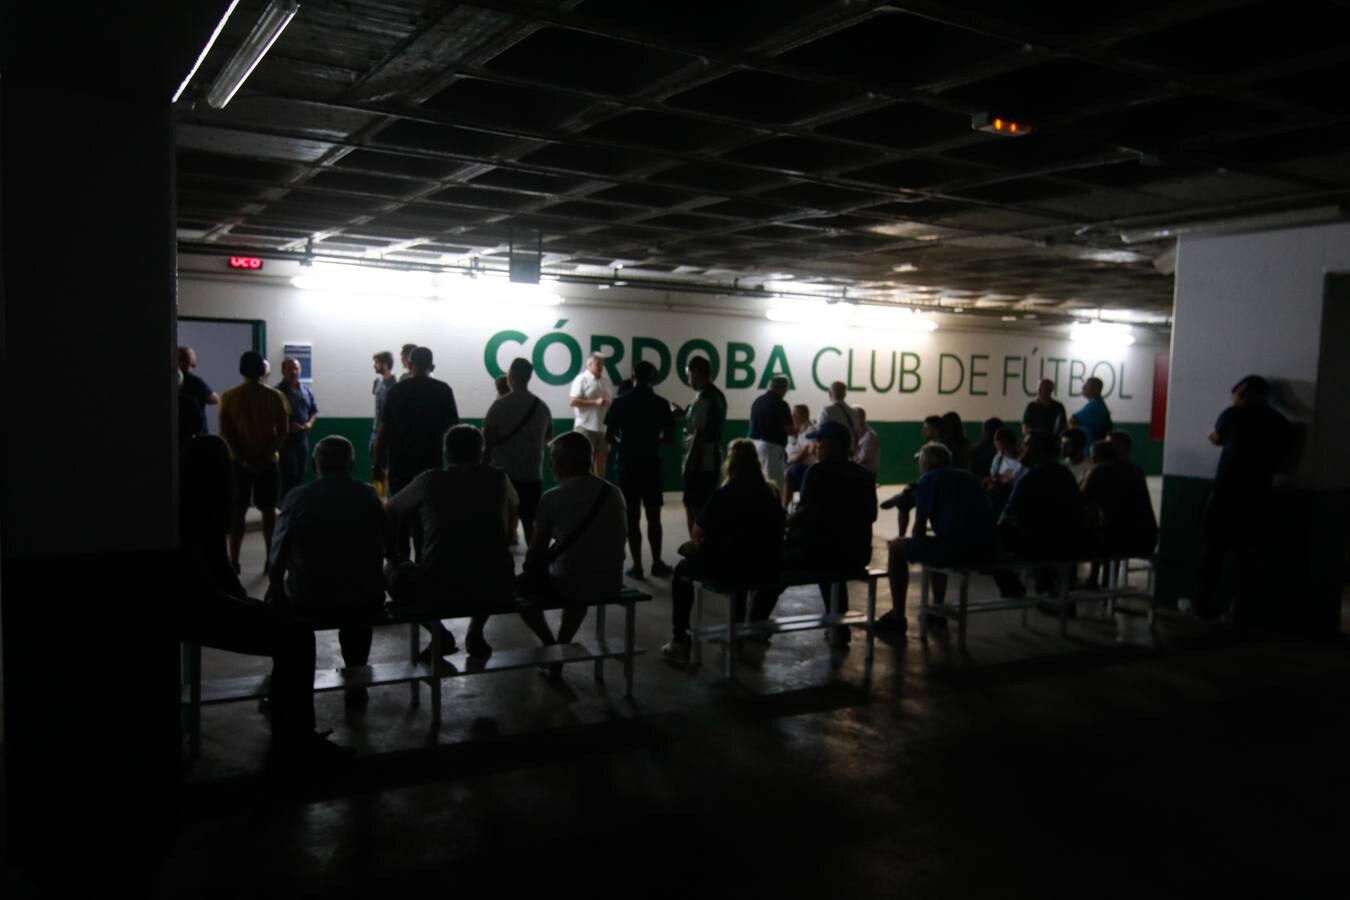 La renovación de abonos del Córdoba CF, en imágenes